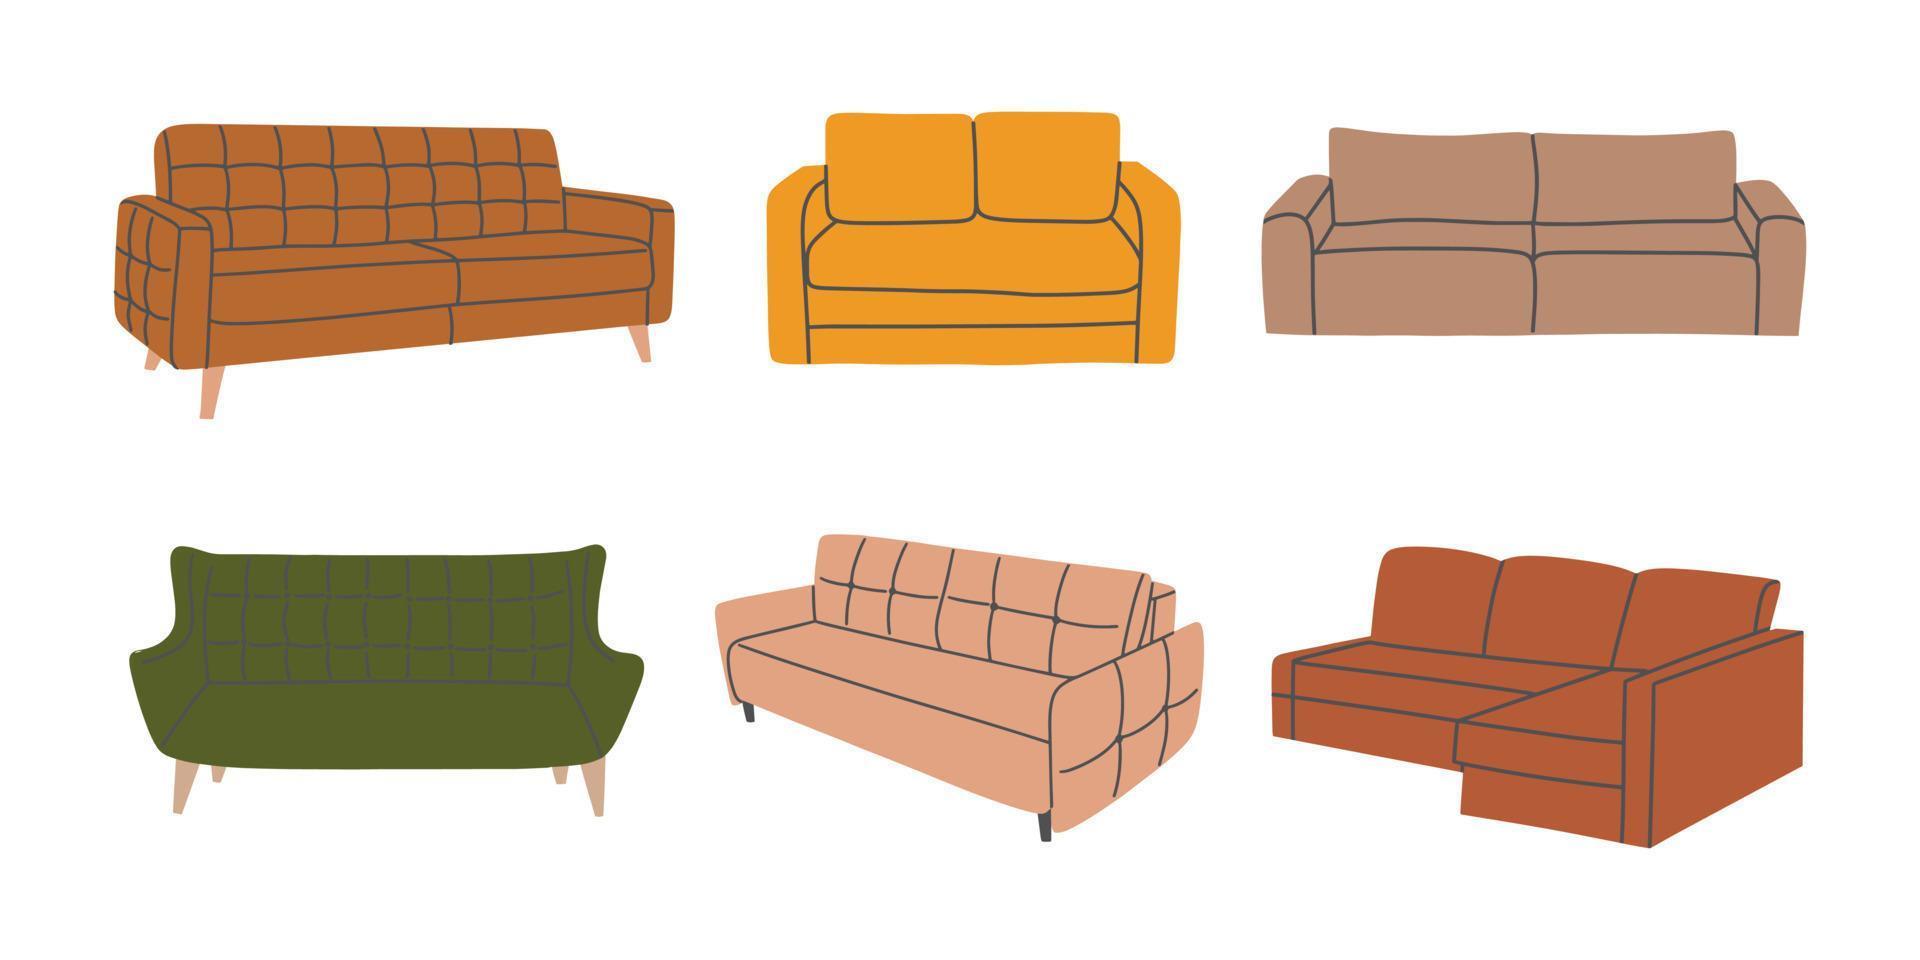 conjunto de varios sofás coloridos de moda. colección de muebles blandos para interiorismo y decoración. ilustración vectorial dibujada a mano aislada sobre fondo blanco vector